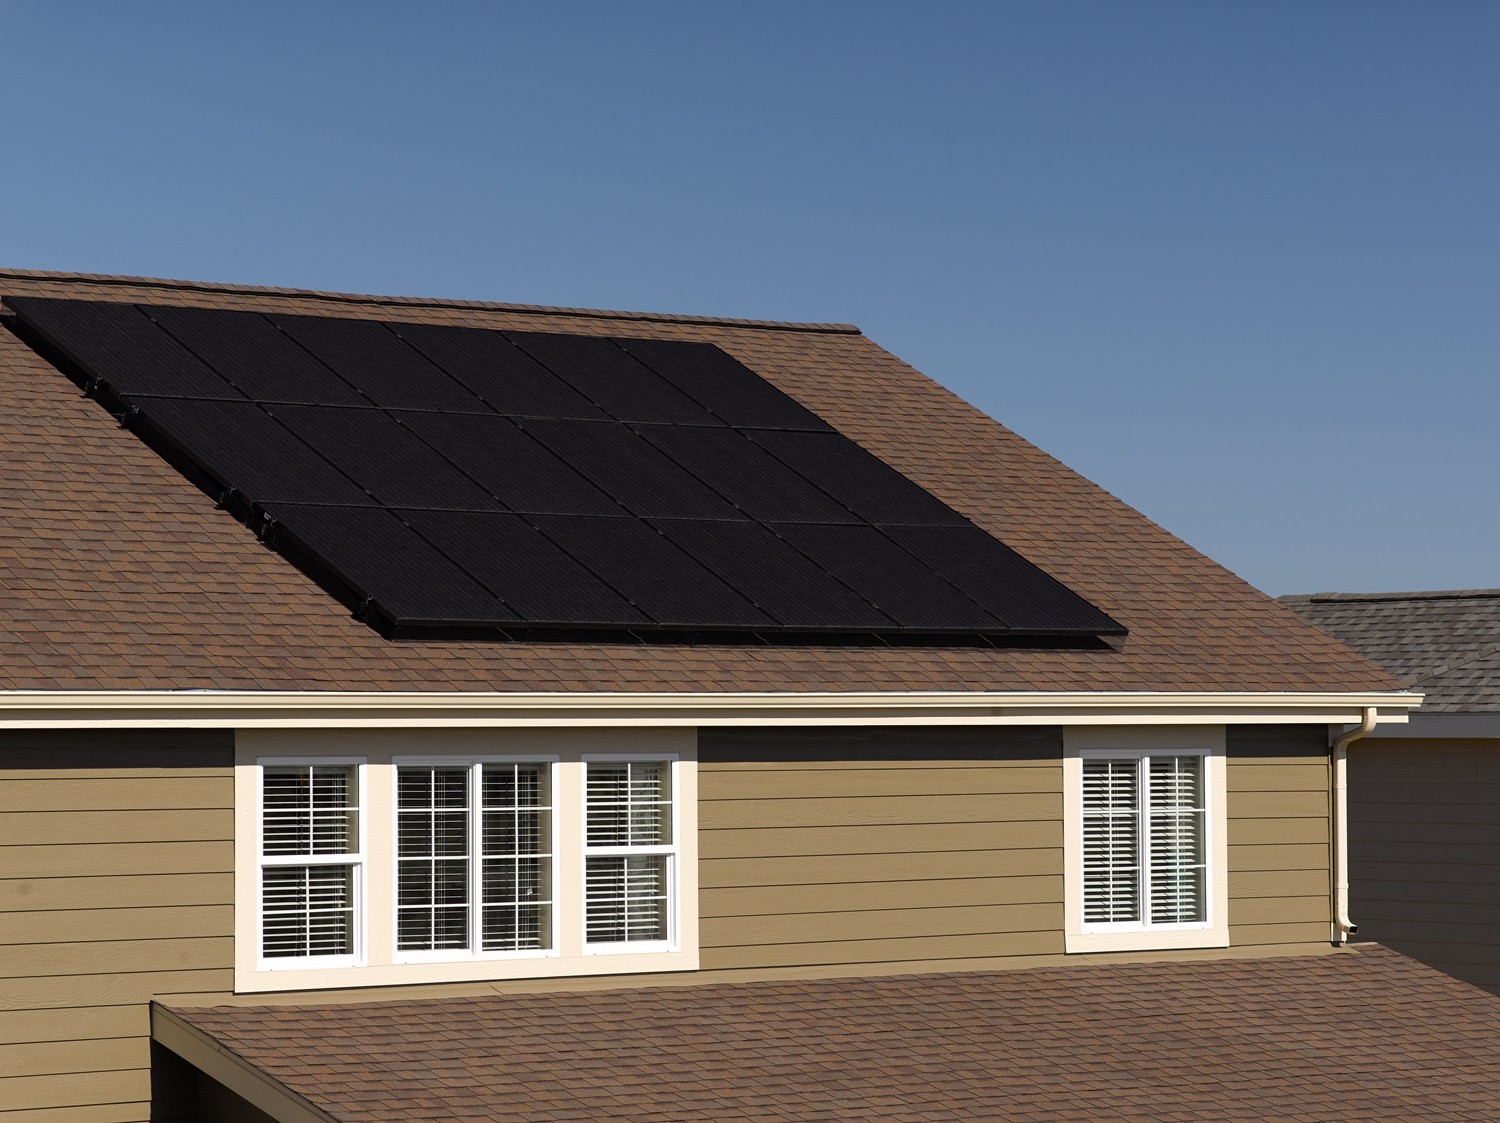 6 Pilihan Solar Panel yang Murah untuk Rumah Hunian